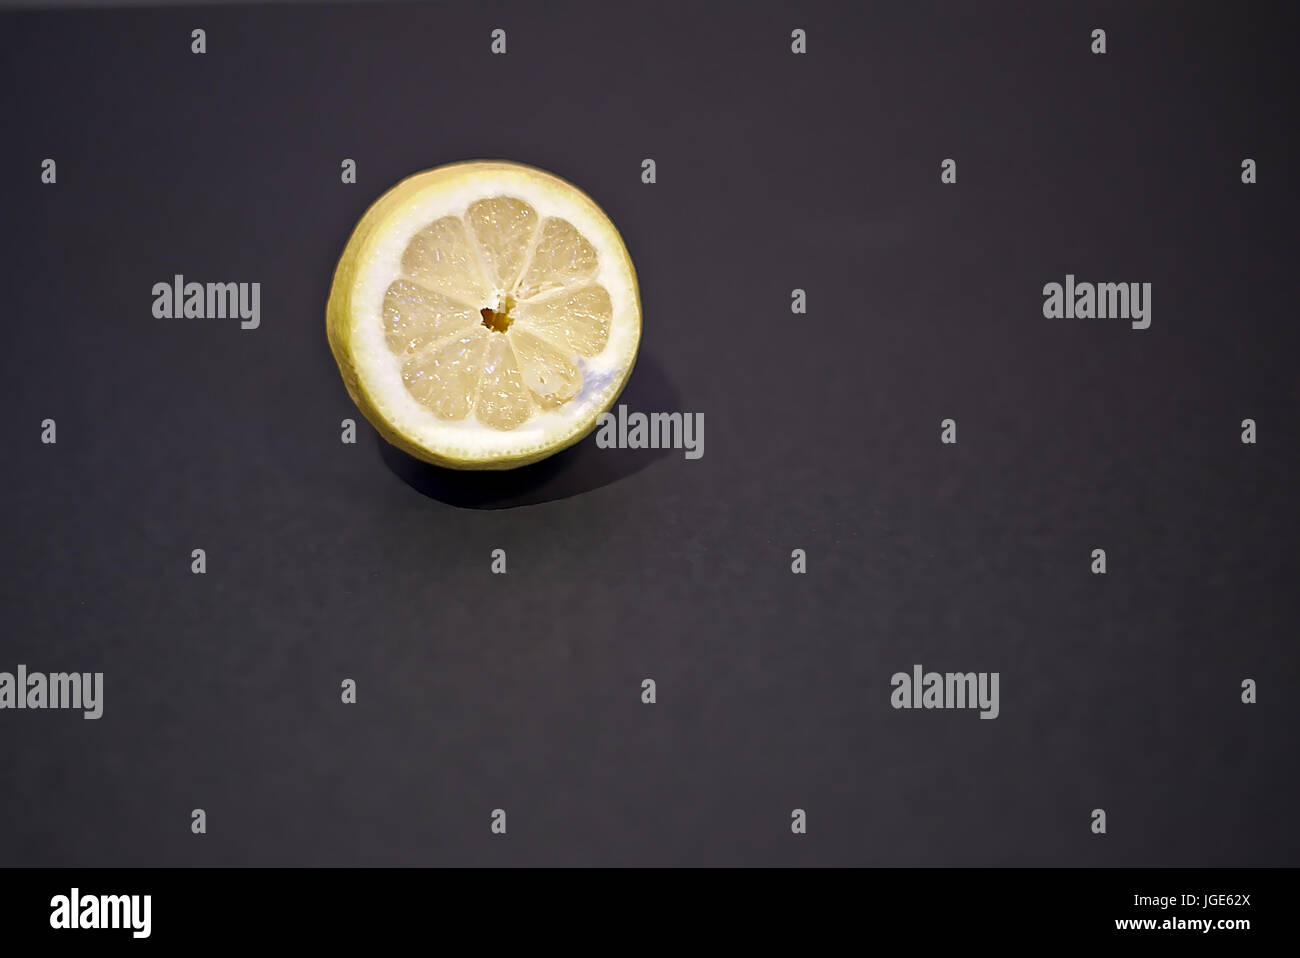 Zitrone-Stock-Fotografie. Zitrone mit einem dunklen Hintergrund. Stockfoto